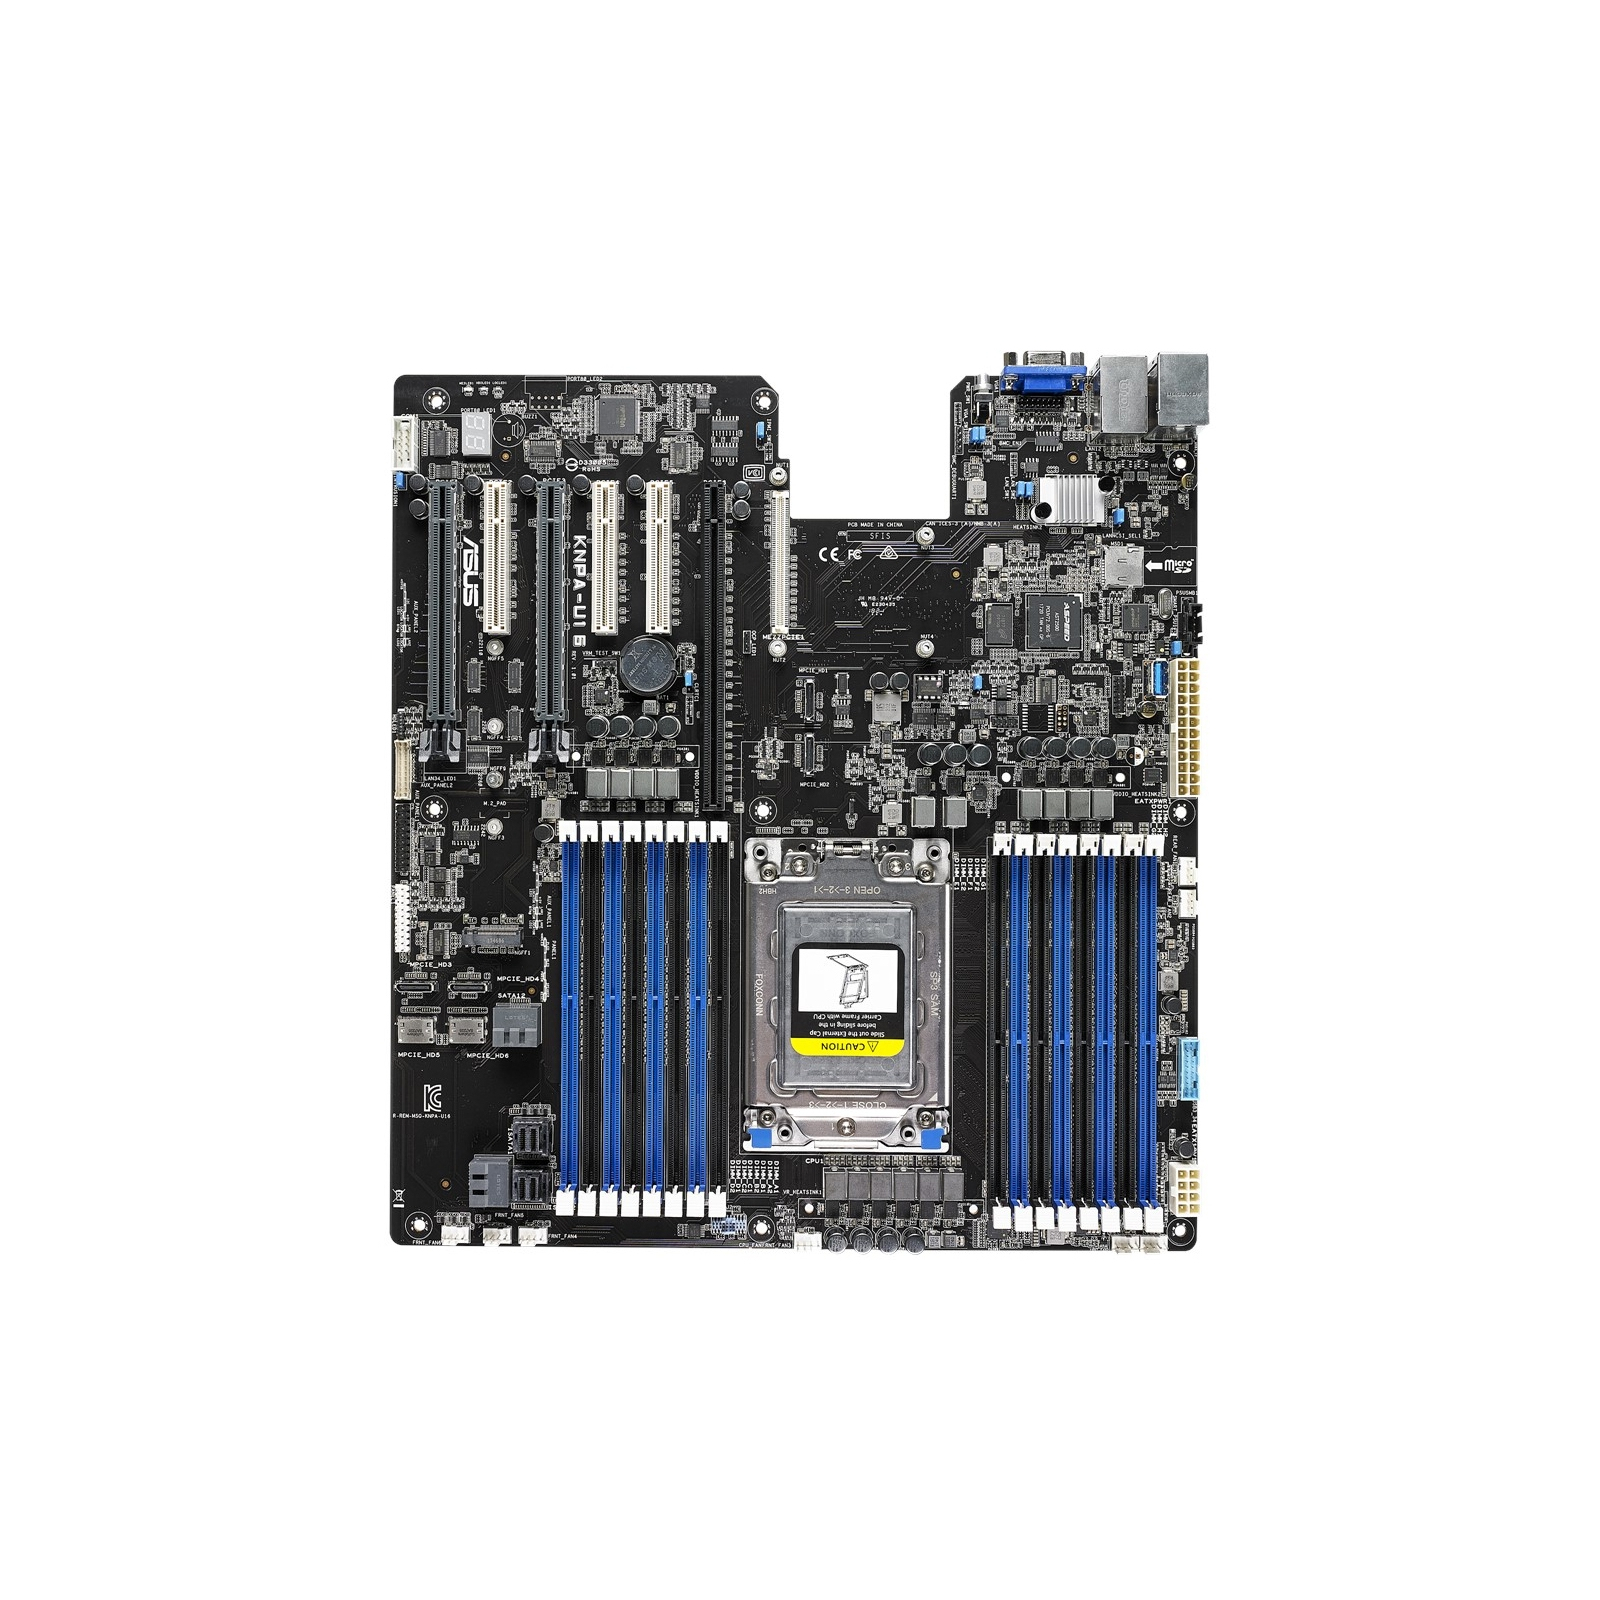 Серверная материнская плата ASUS KNPA-U16 SP3 AMD EPYC™ 7000 Series 16xDDR4 VGA AST2500 64MB (KNPA-U16) изображение 2